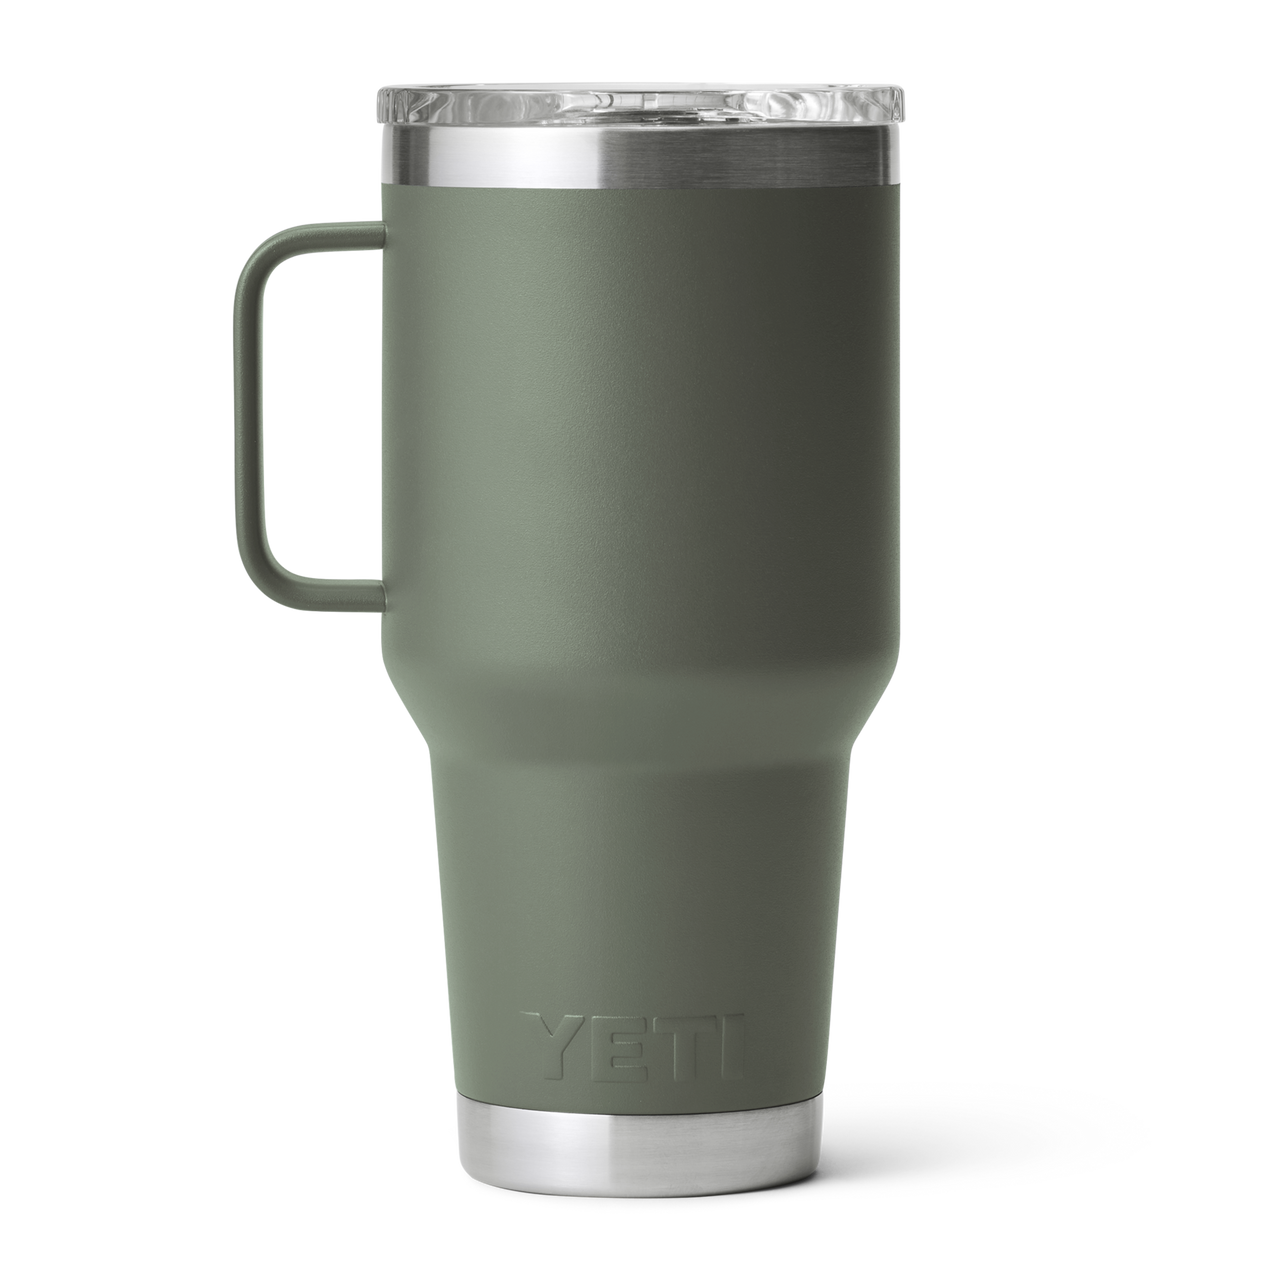 Yeti Rambler Travel Mug, 30 oz.